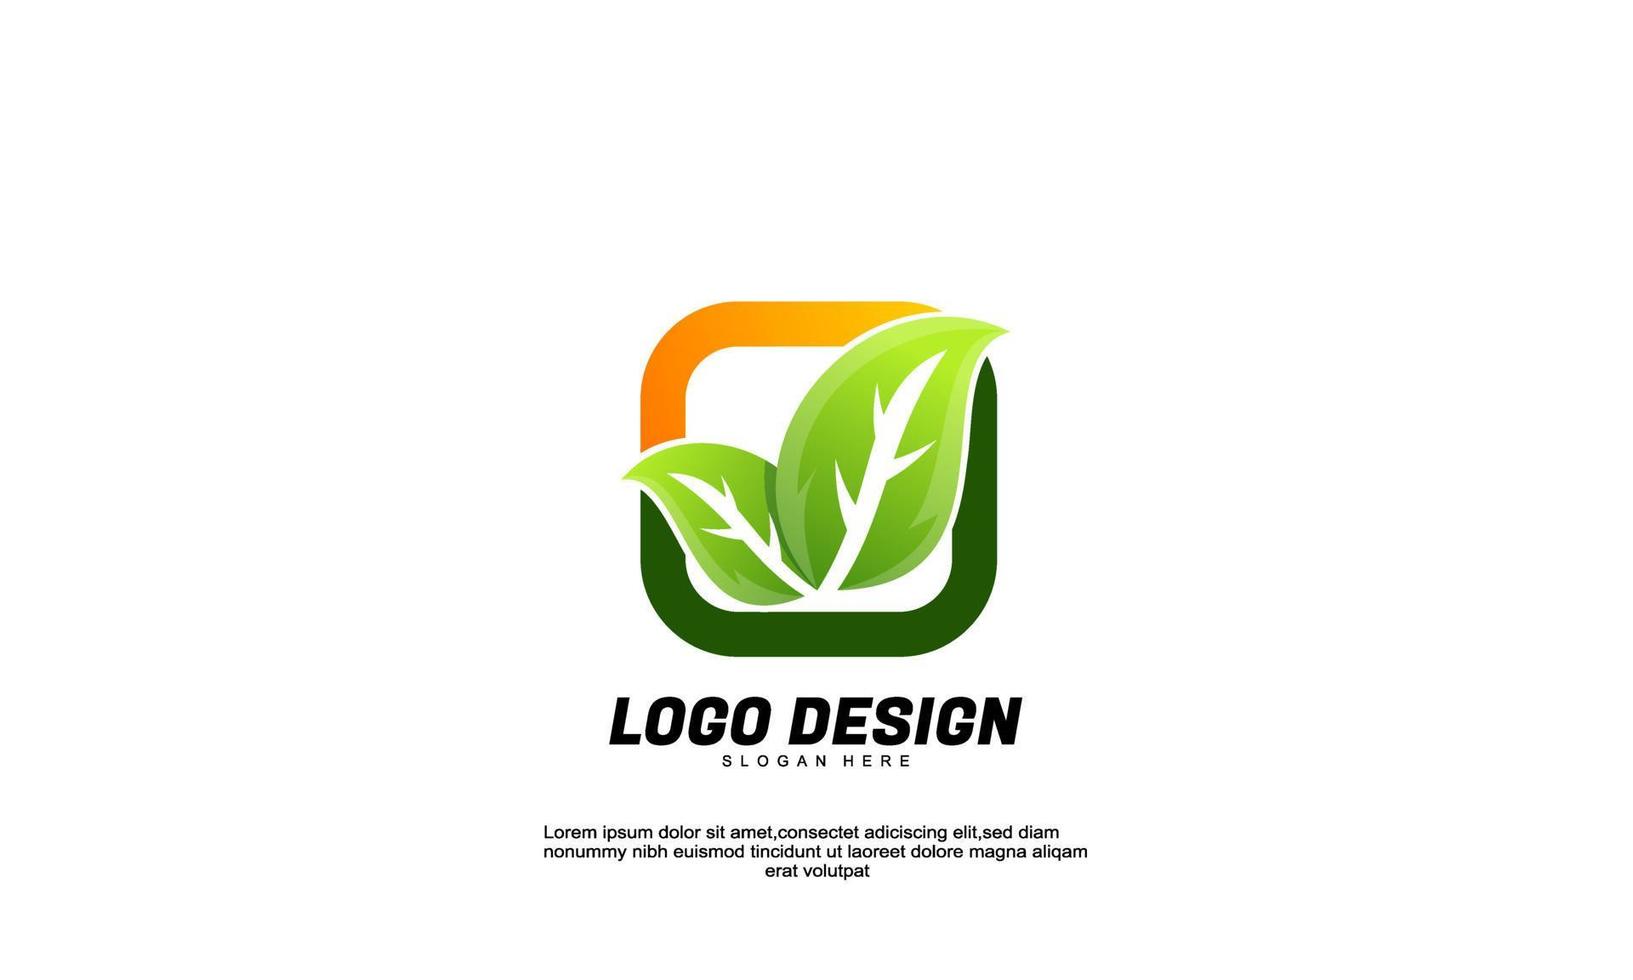 ideia de inspiração criativa abstrata de estoque marcando logotipo de folha e retângulo para empresa ou vetor de design de estilo plano de negócios